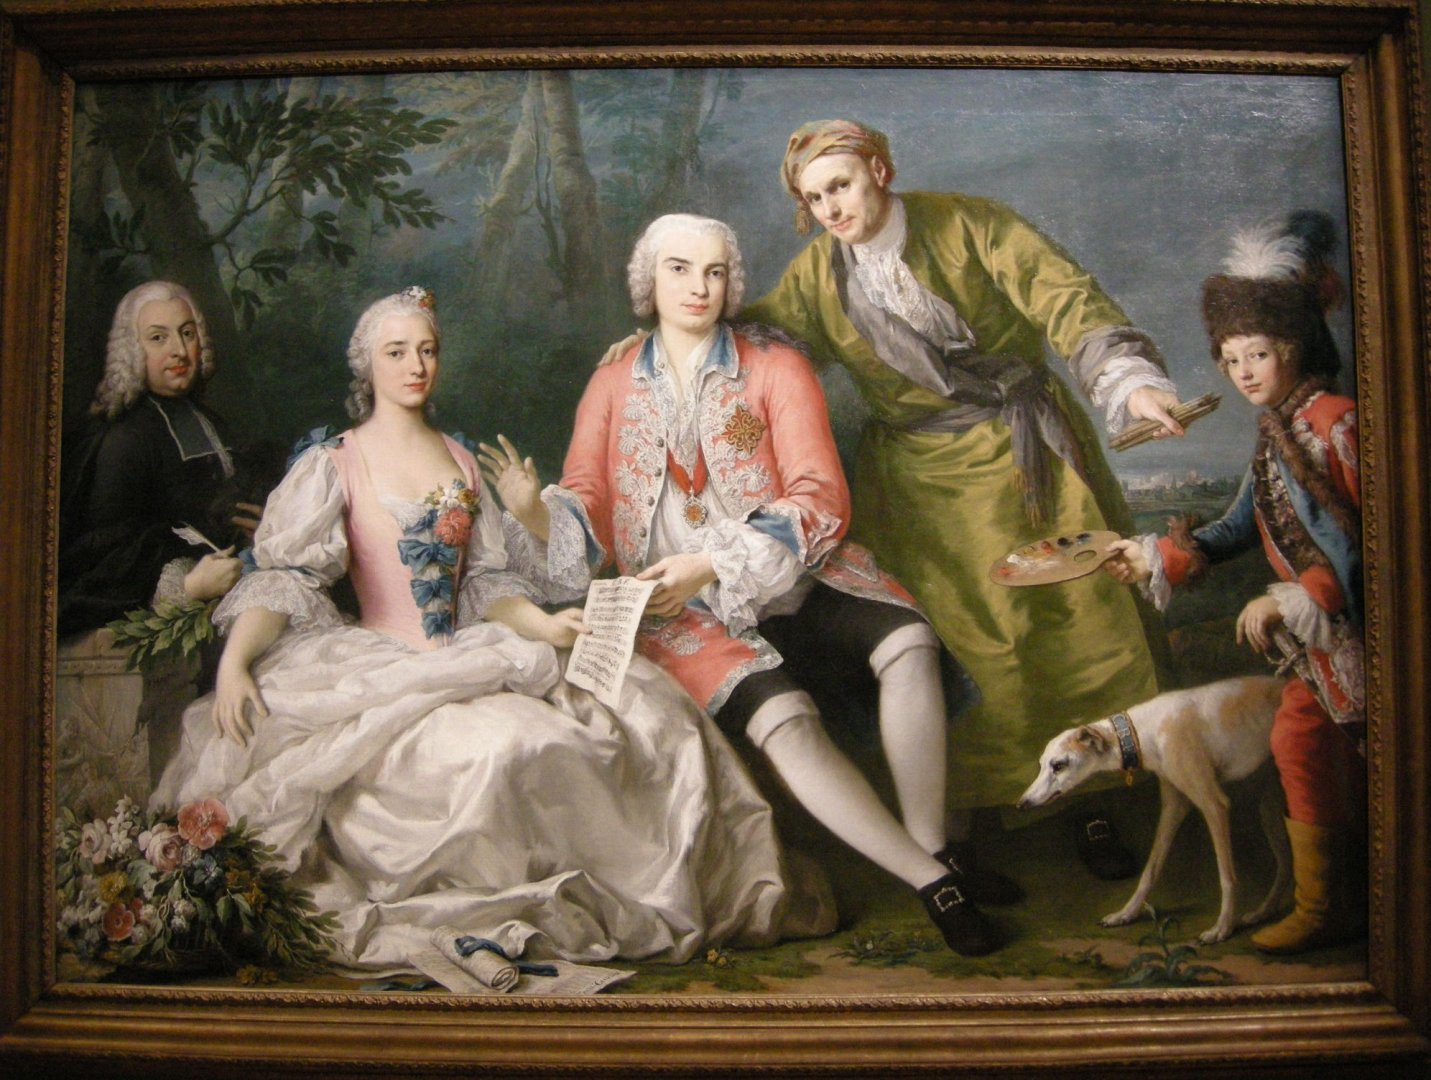 Metastasio, Teresa Castellini, Farinelli, és Jacopo Amigoni utóbbi festményén 1750-1752 körül - forrás: wikipedia